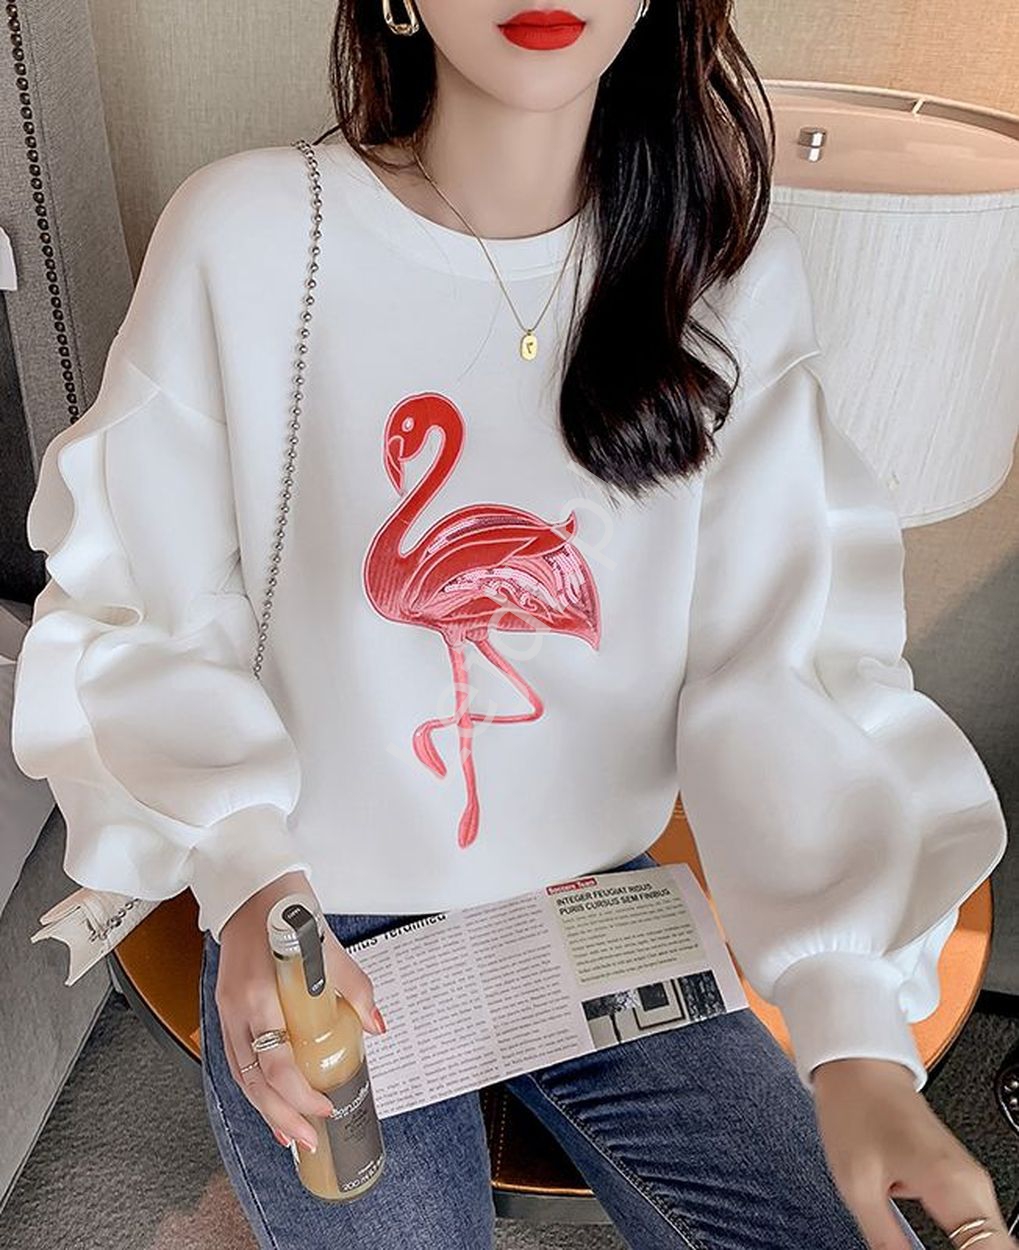 Biała stylowa bluza damska z flamingiem